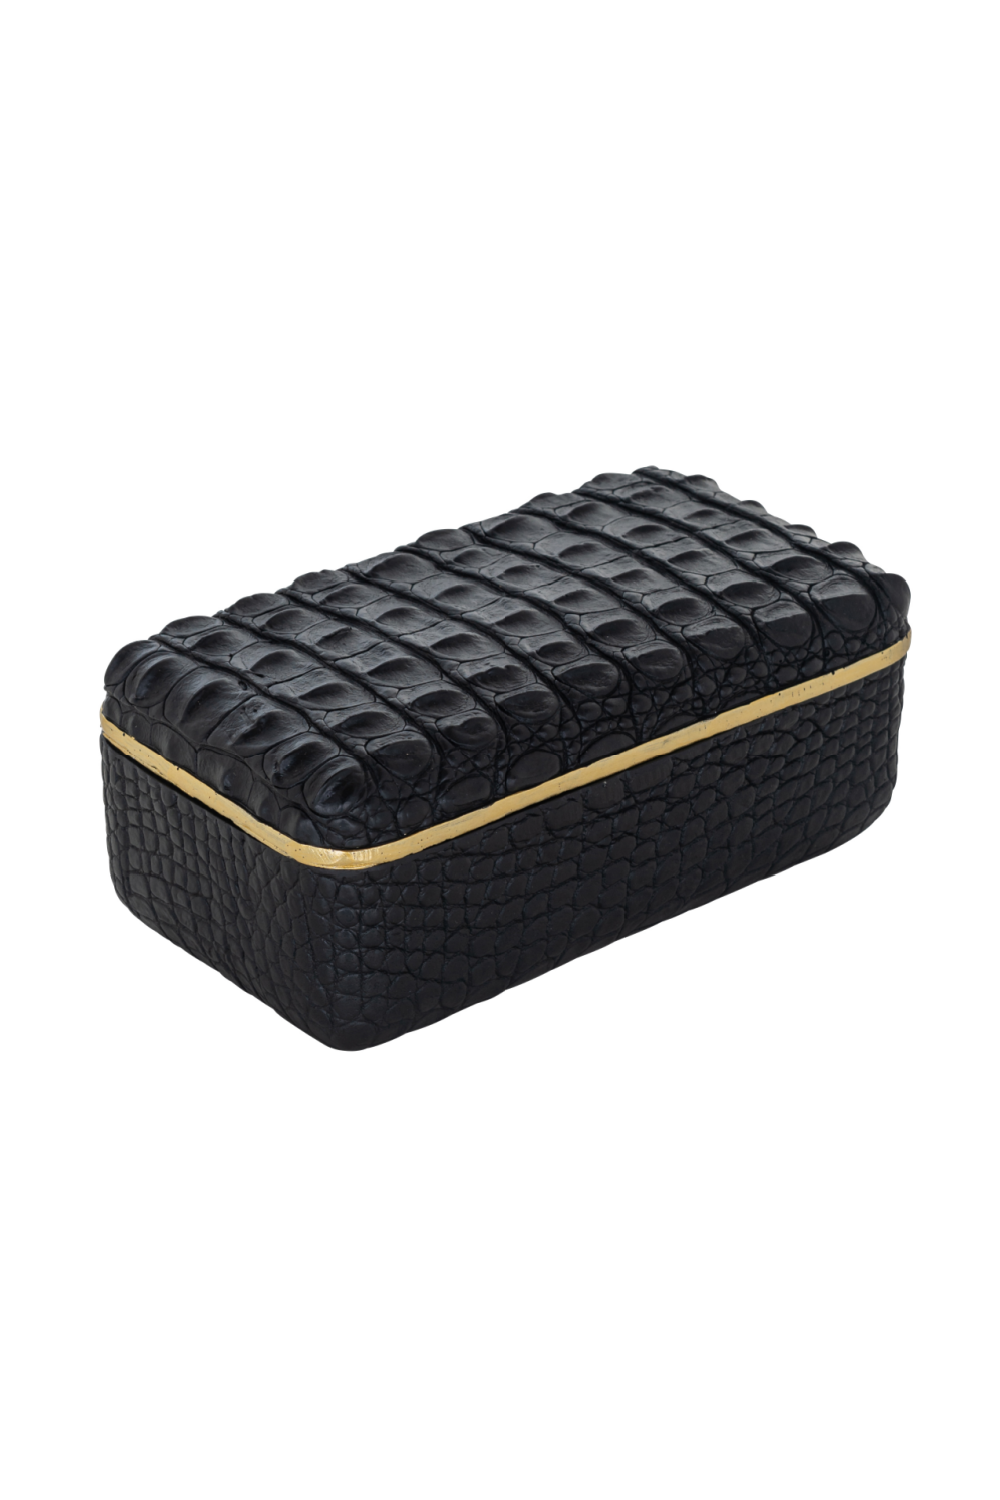 Gold Rimmed Black Storage Box | OROA Cobe | OROA.com